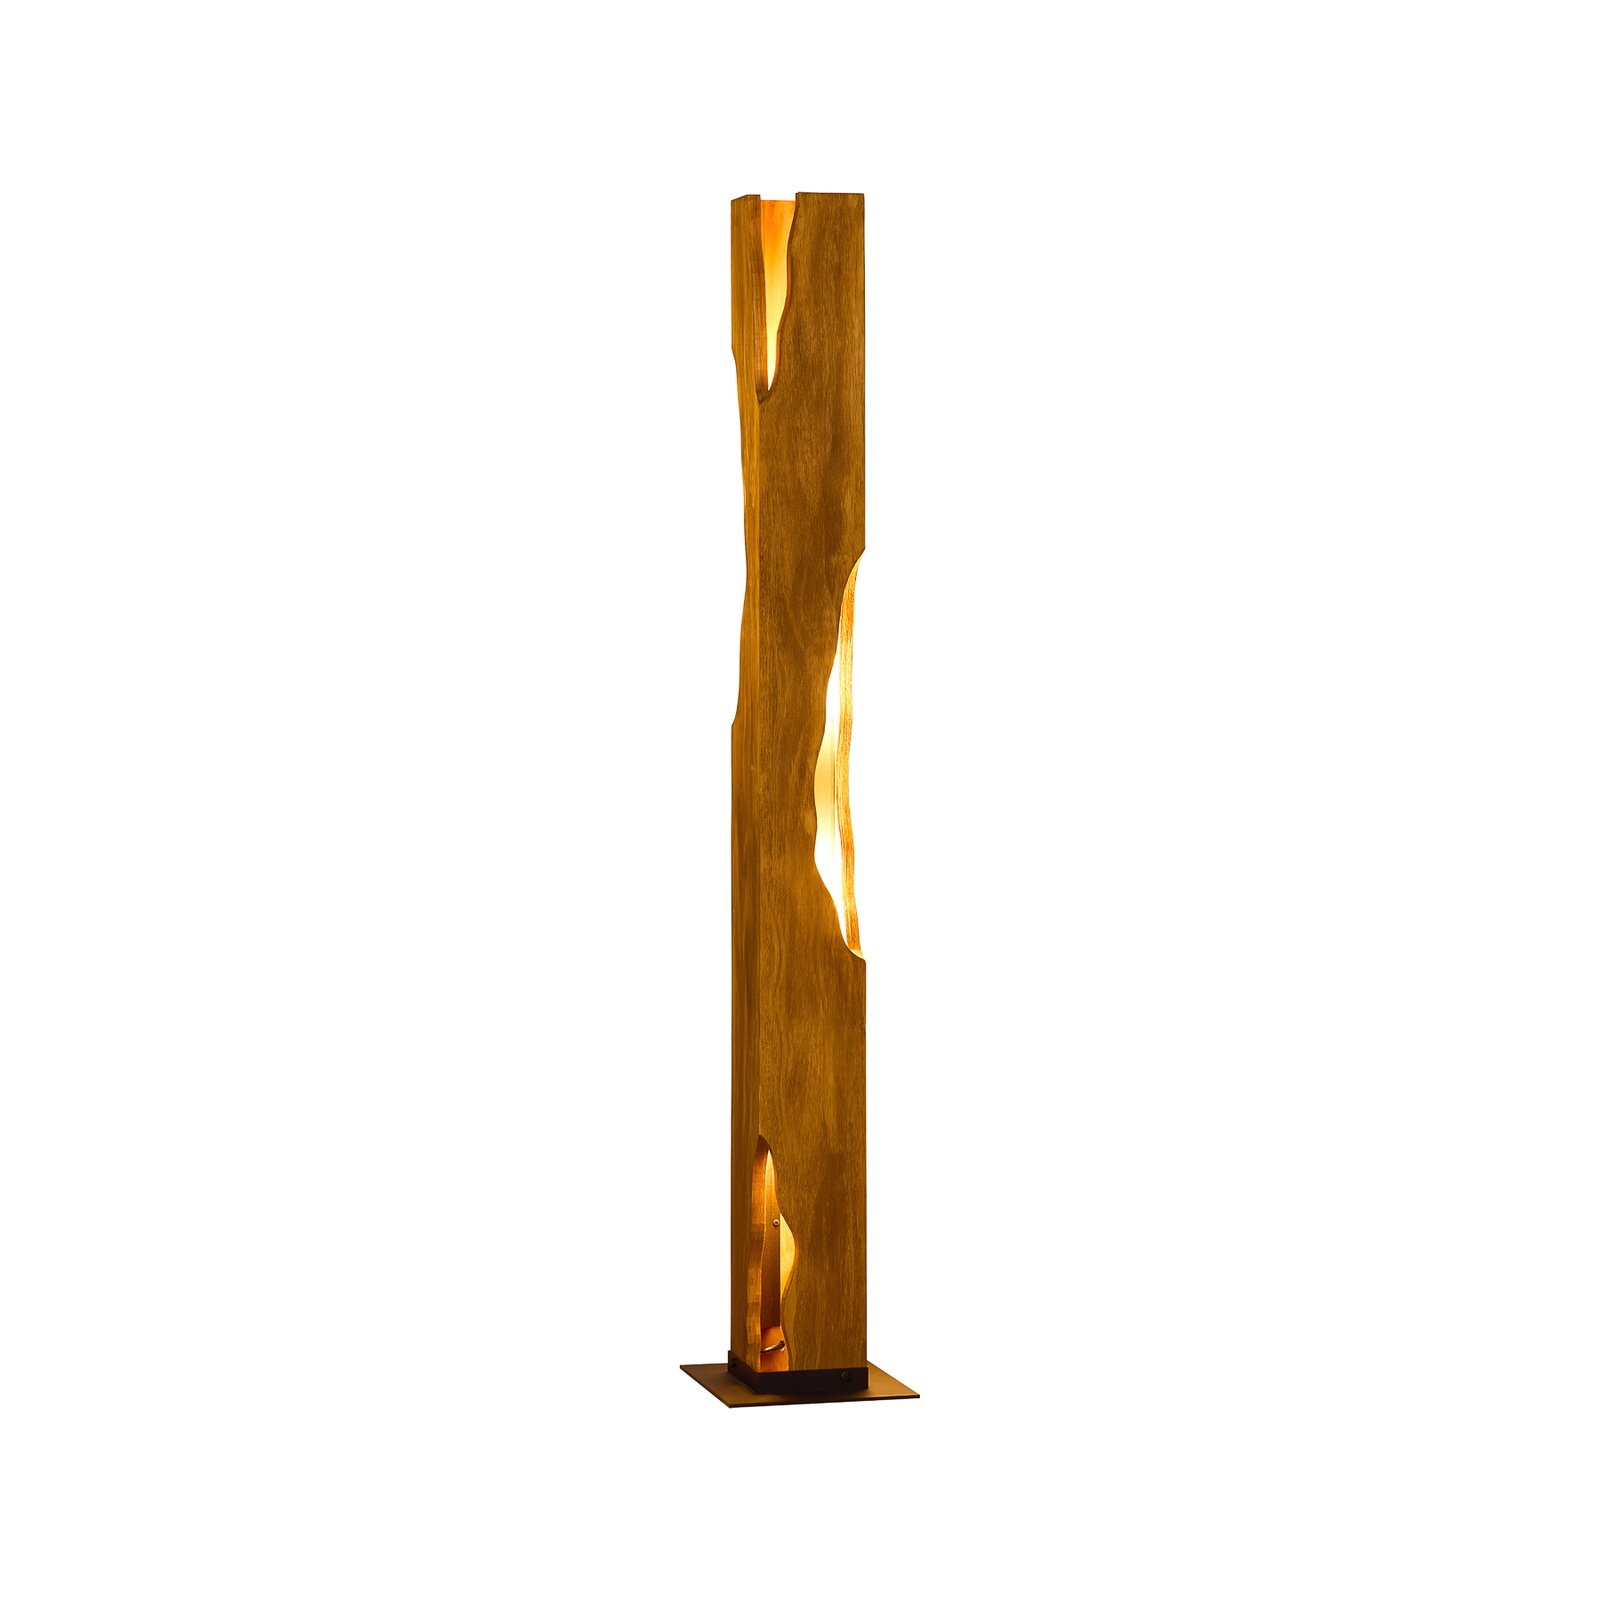 Φωτιστικό δαπέδου Venus, καφέ, ύψος 141 cm, ξύλο, 4-φωτιστικό